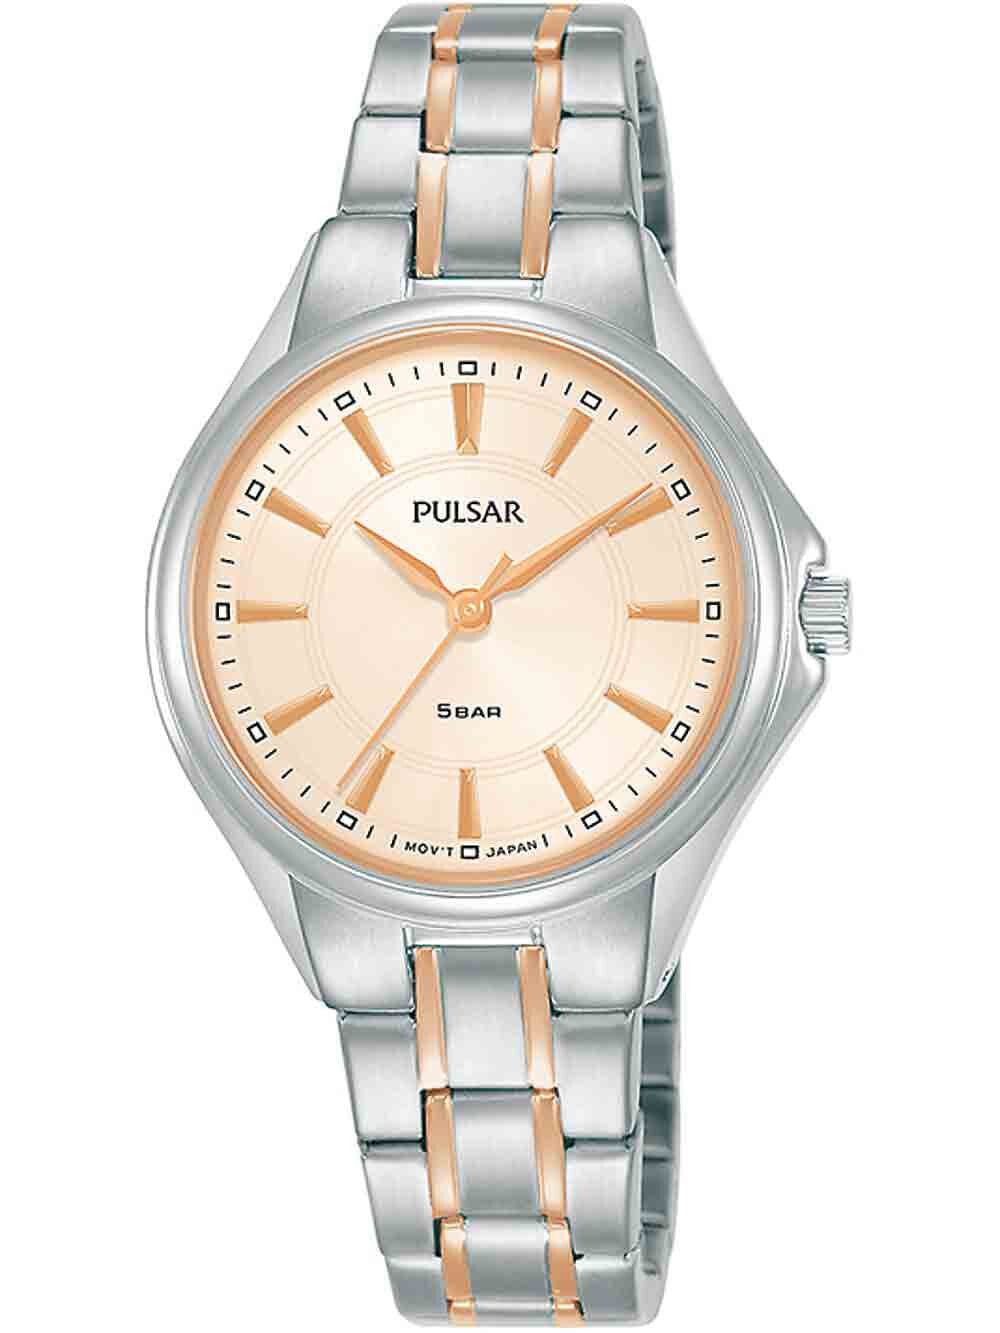 Женские наручные кварцевые часы Pulsar ремешок из нержавеющей стали. Водонепроницаемость-5 АТМ. Защищенное от царапин минеральное стекло.